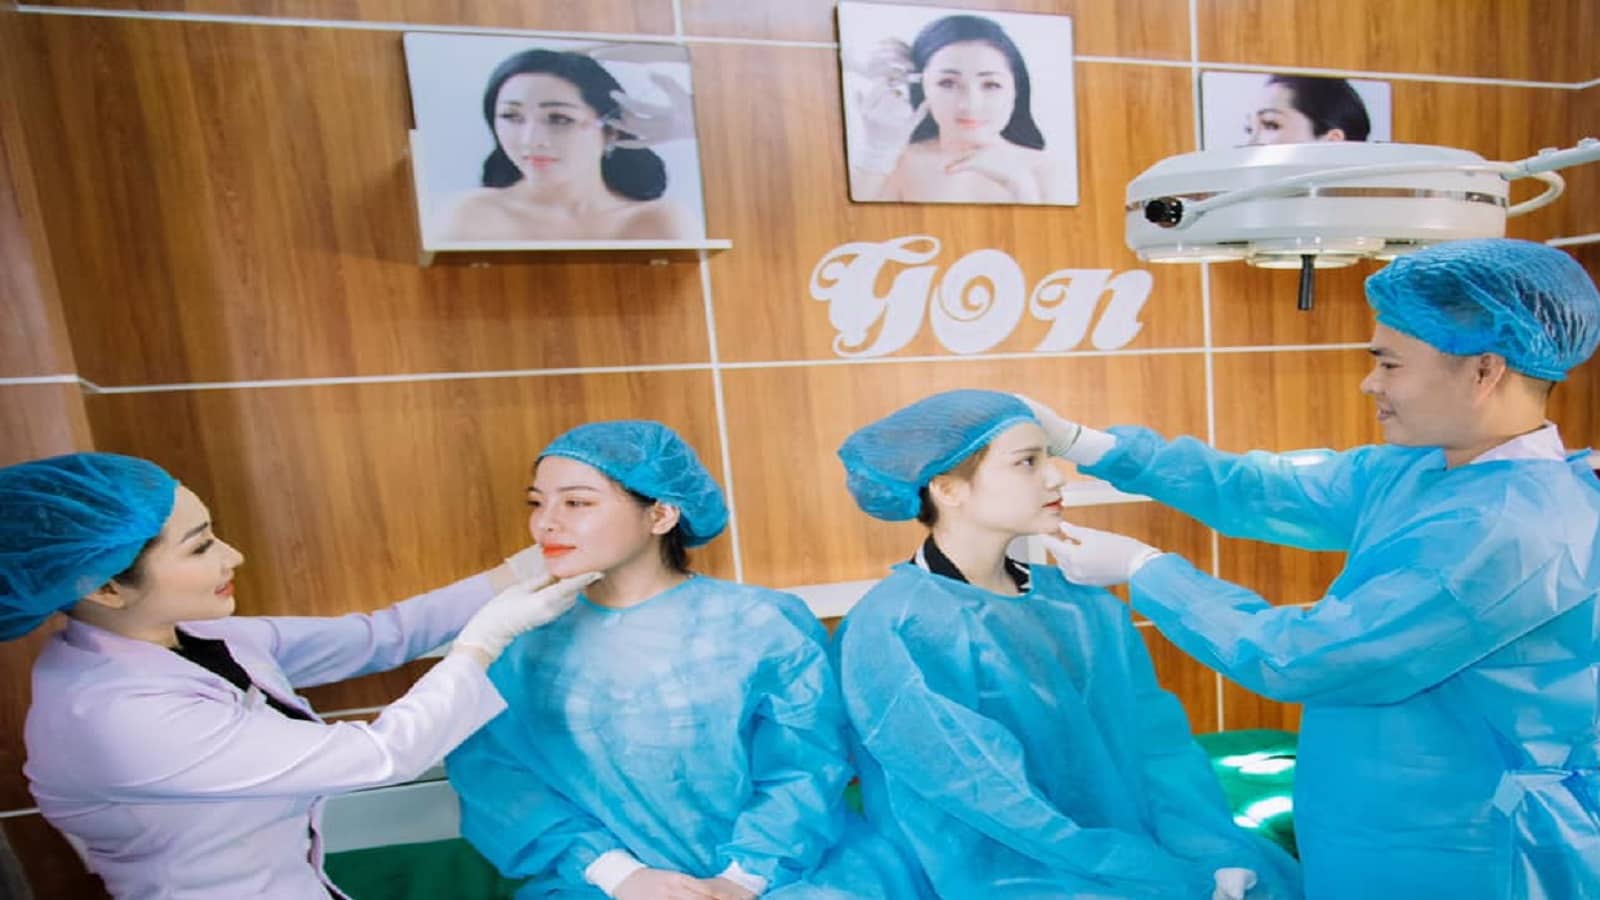 Thẩm mỹ viện Diva là hệ thống chăm sóc sắc đẹp lớn nhất Việt Nam